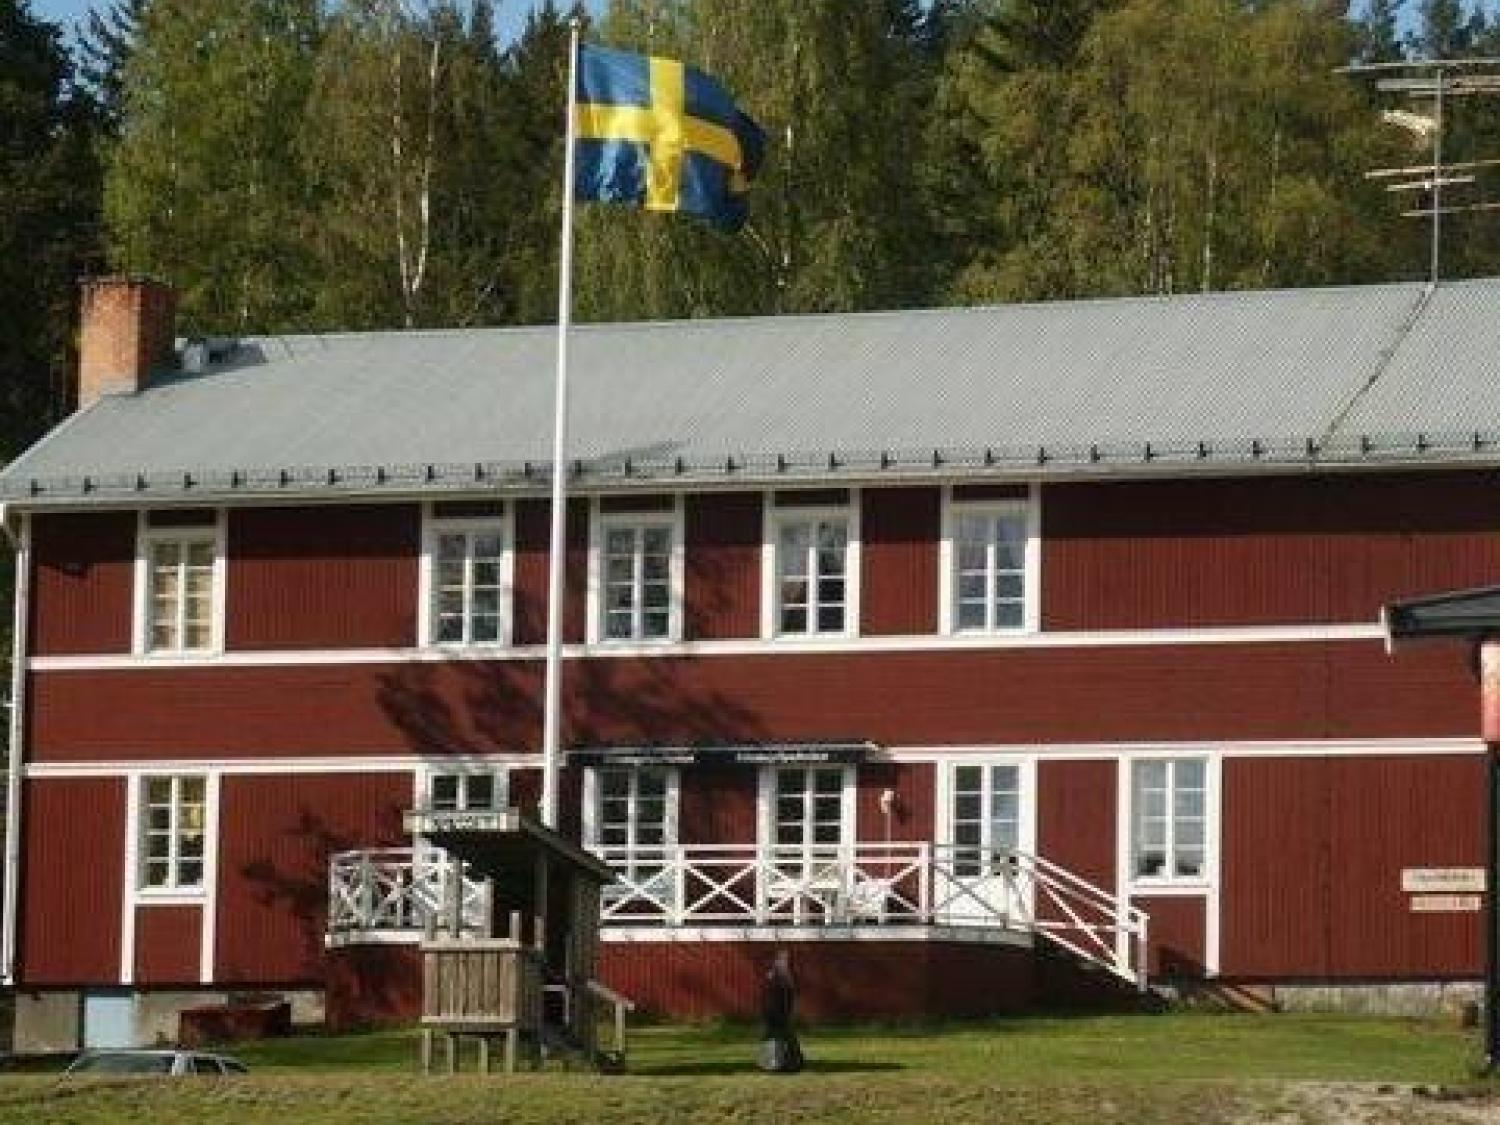 Hassela bibliotek, Hasselagården, Nordanstigs kommun